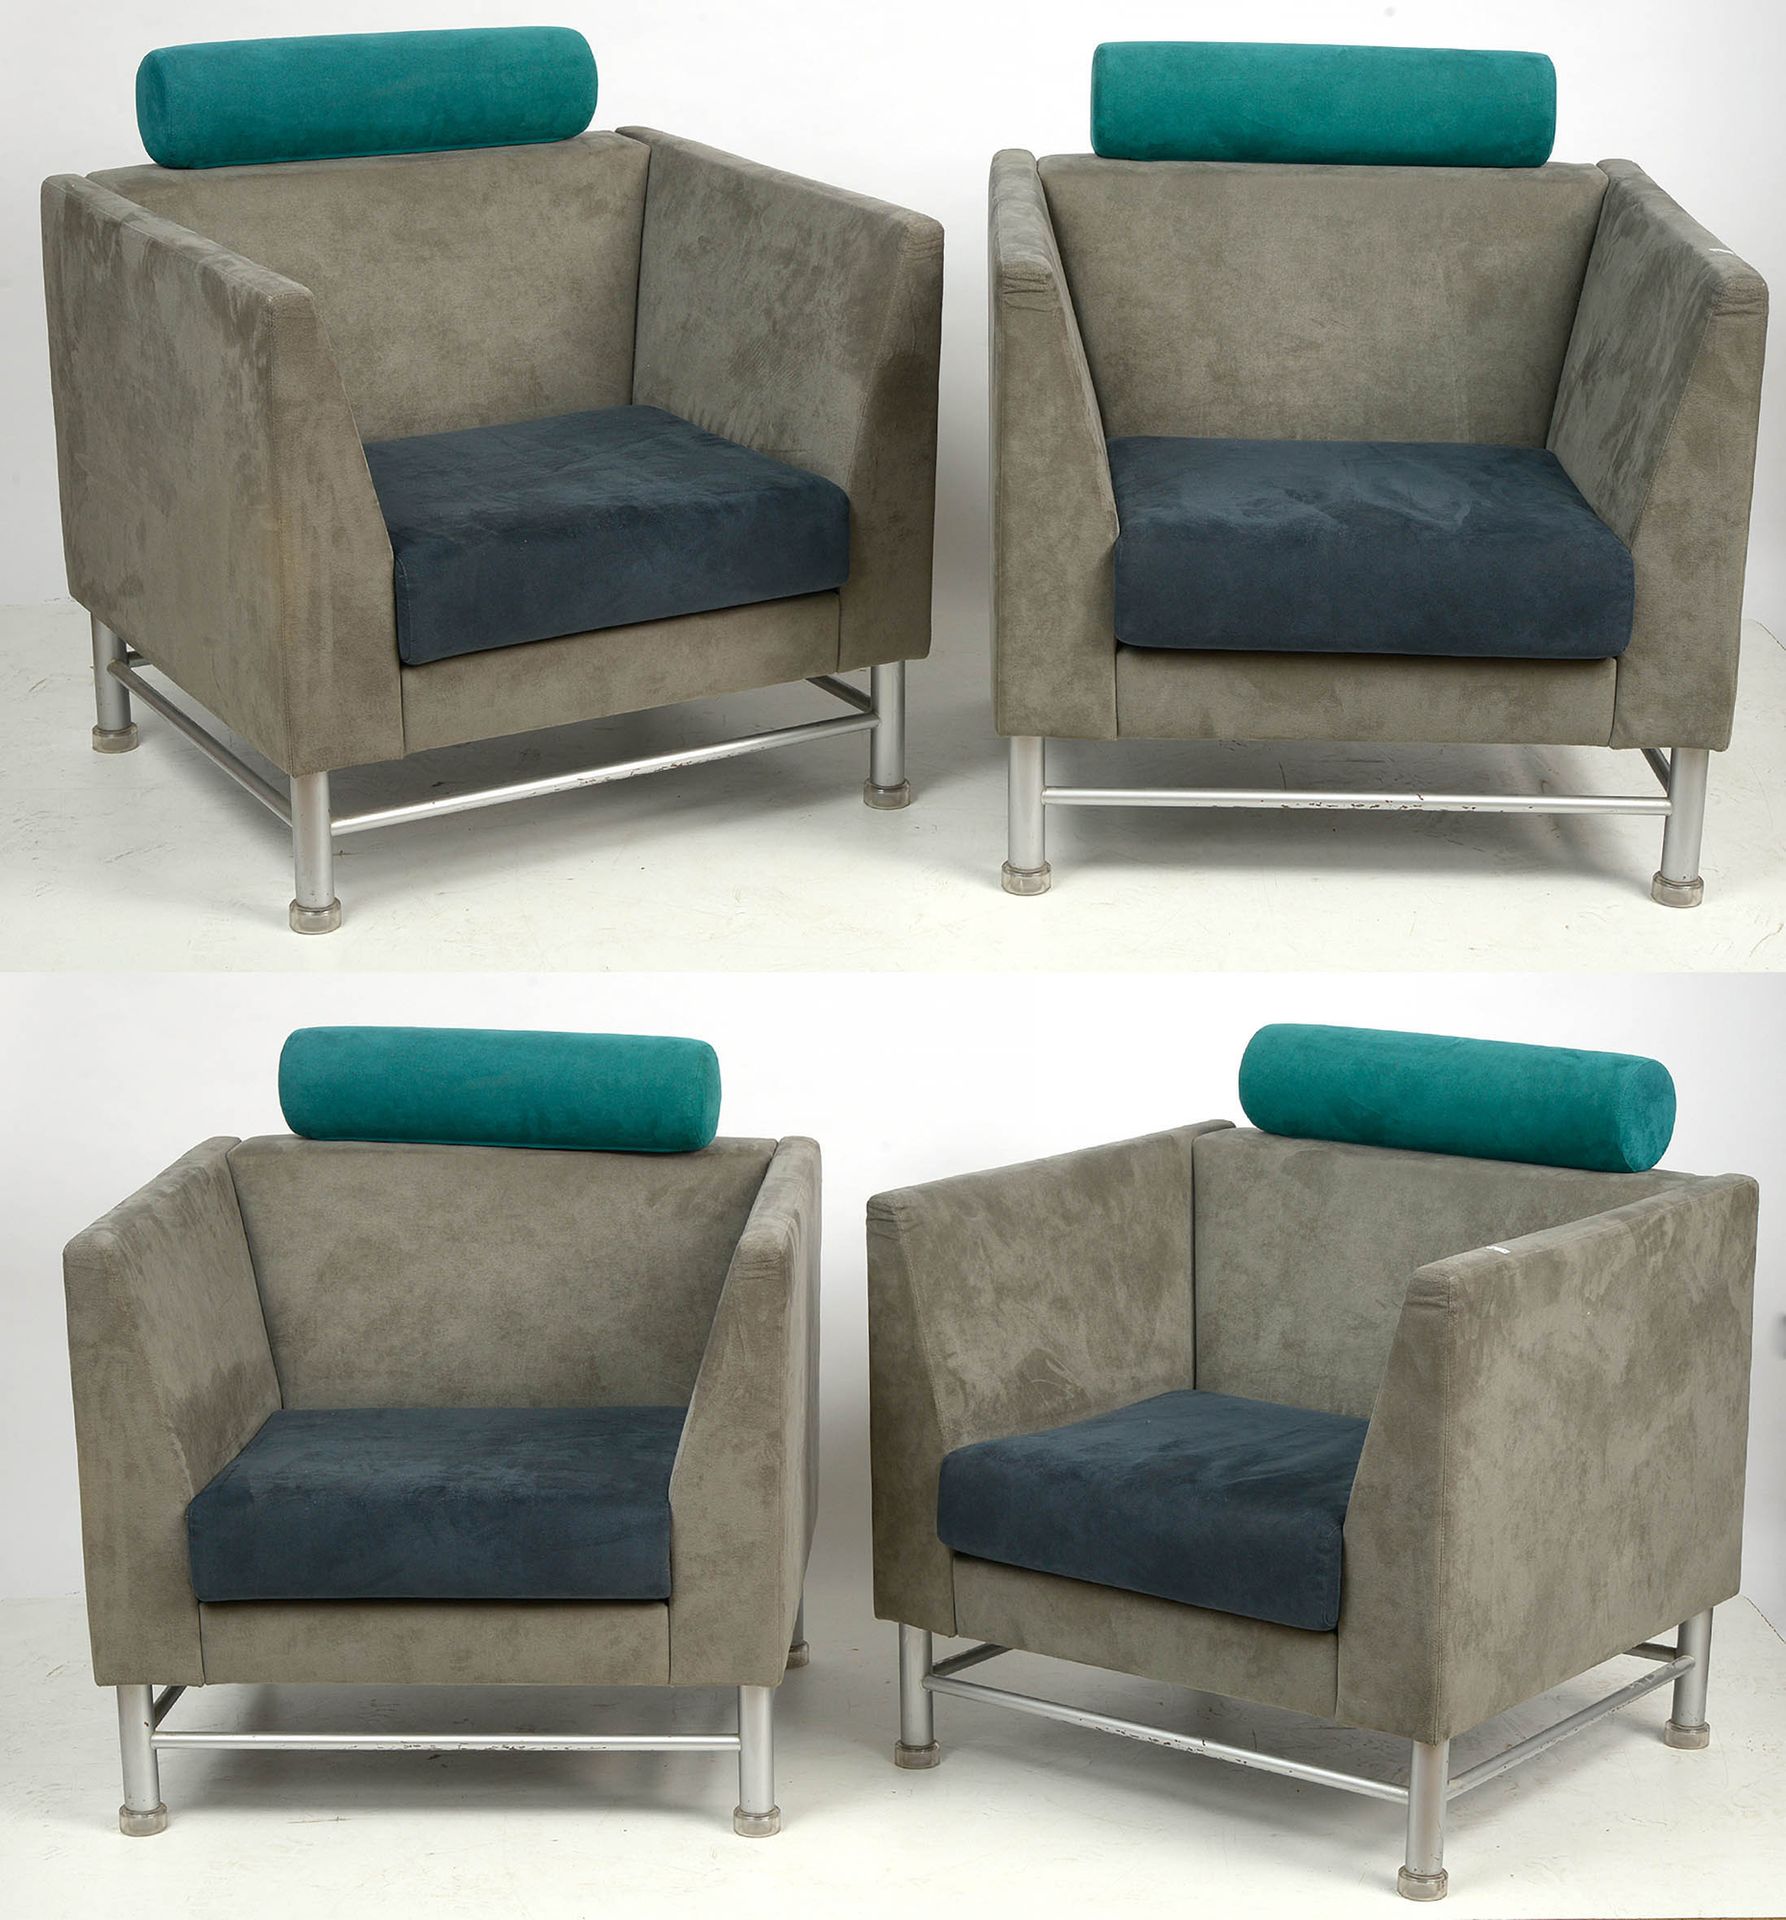 SOTTSASS Ettore (1917 - 2007) 一套四把 "东侧 "休闲椅，镀铬钢架，饰以半透明塑料端盖，用灰色、深蓝色和绿色织物装饰。座椅下面的软&hellip;